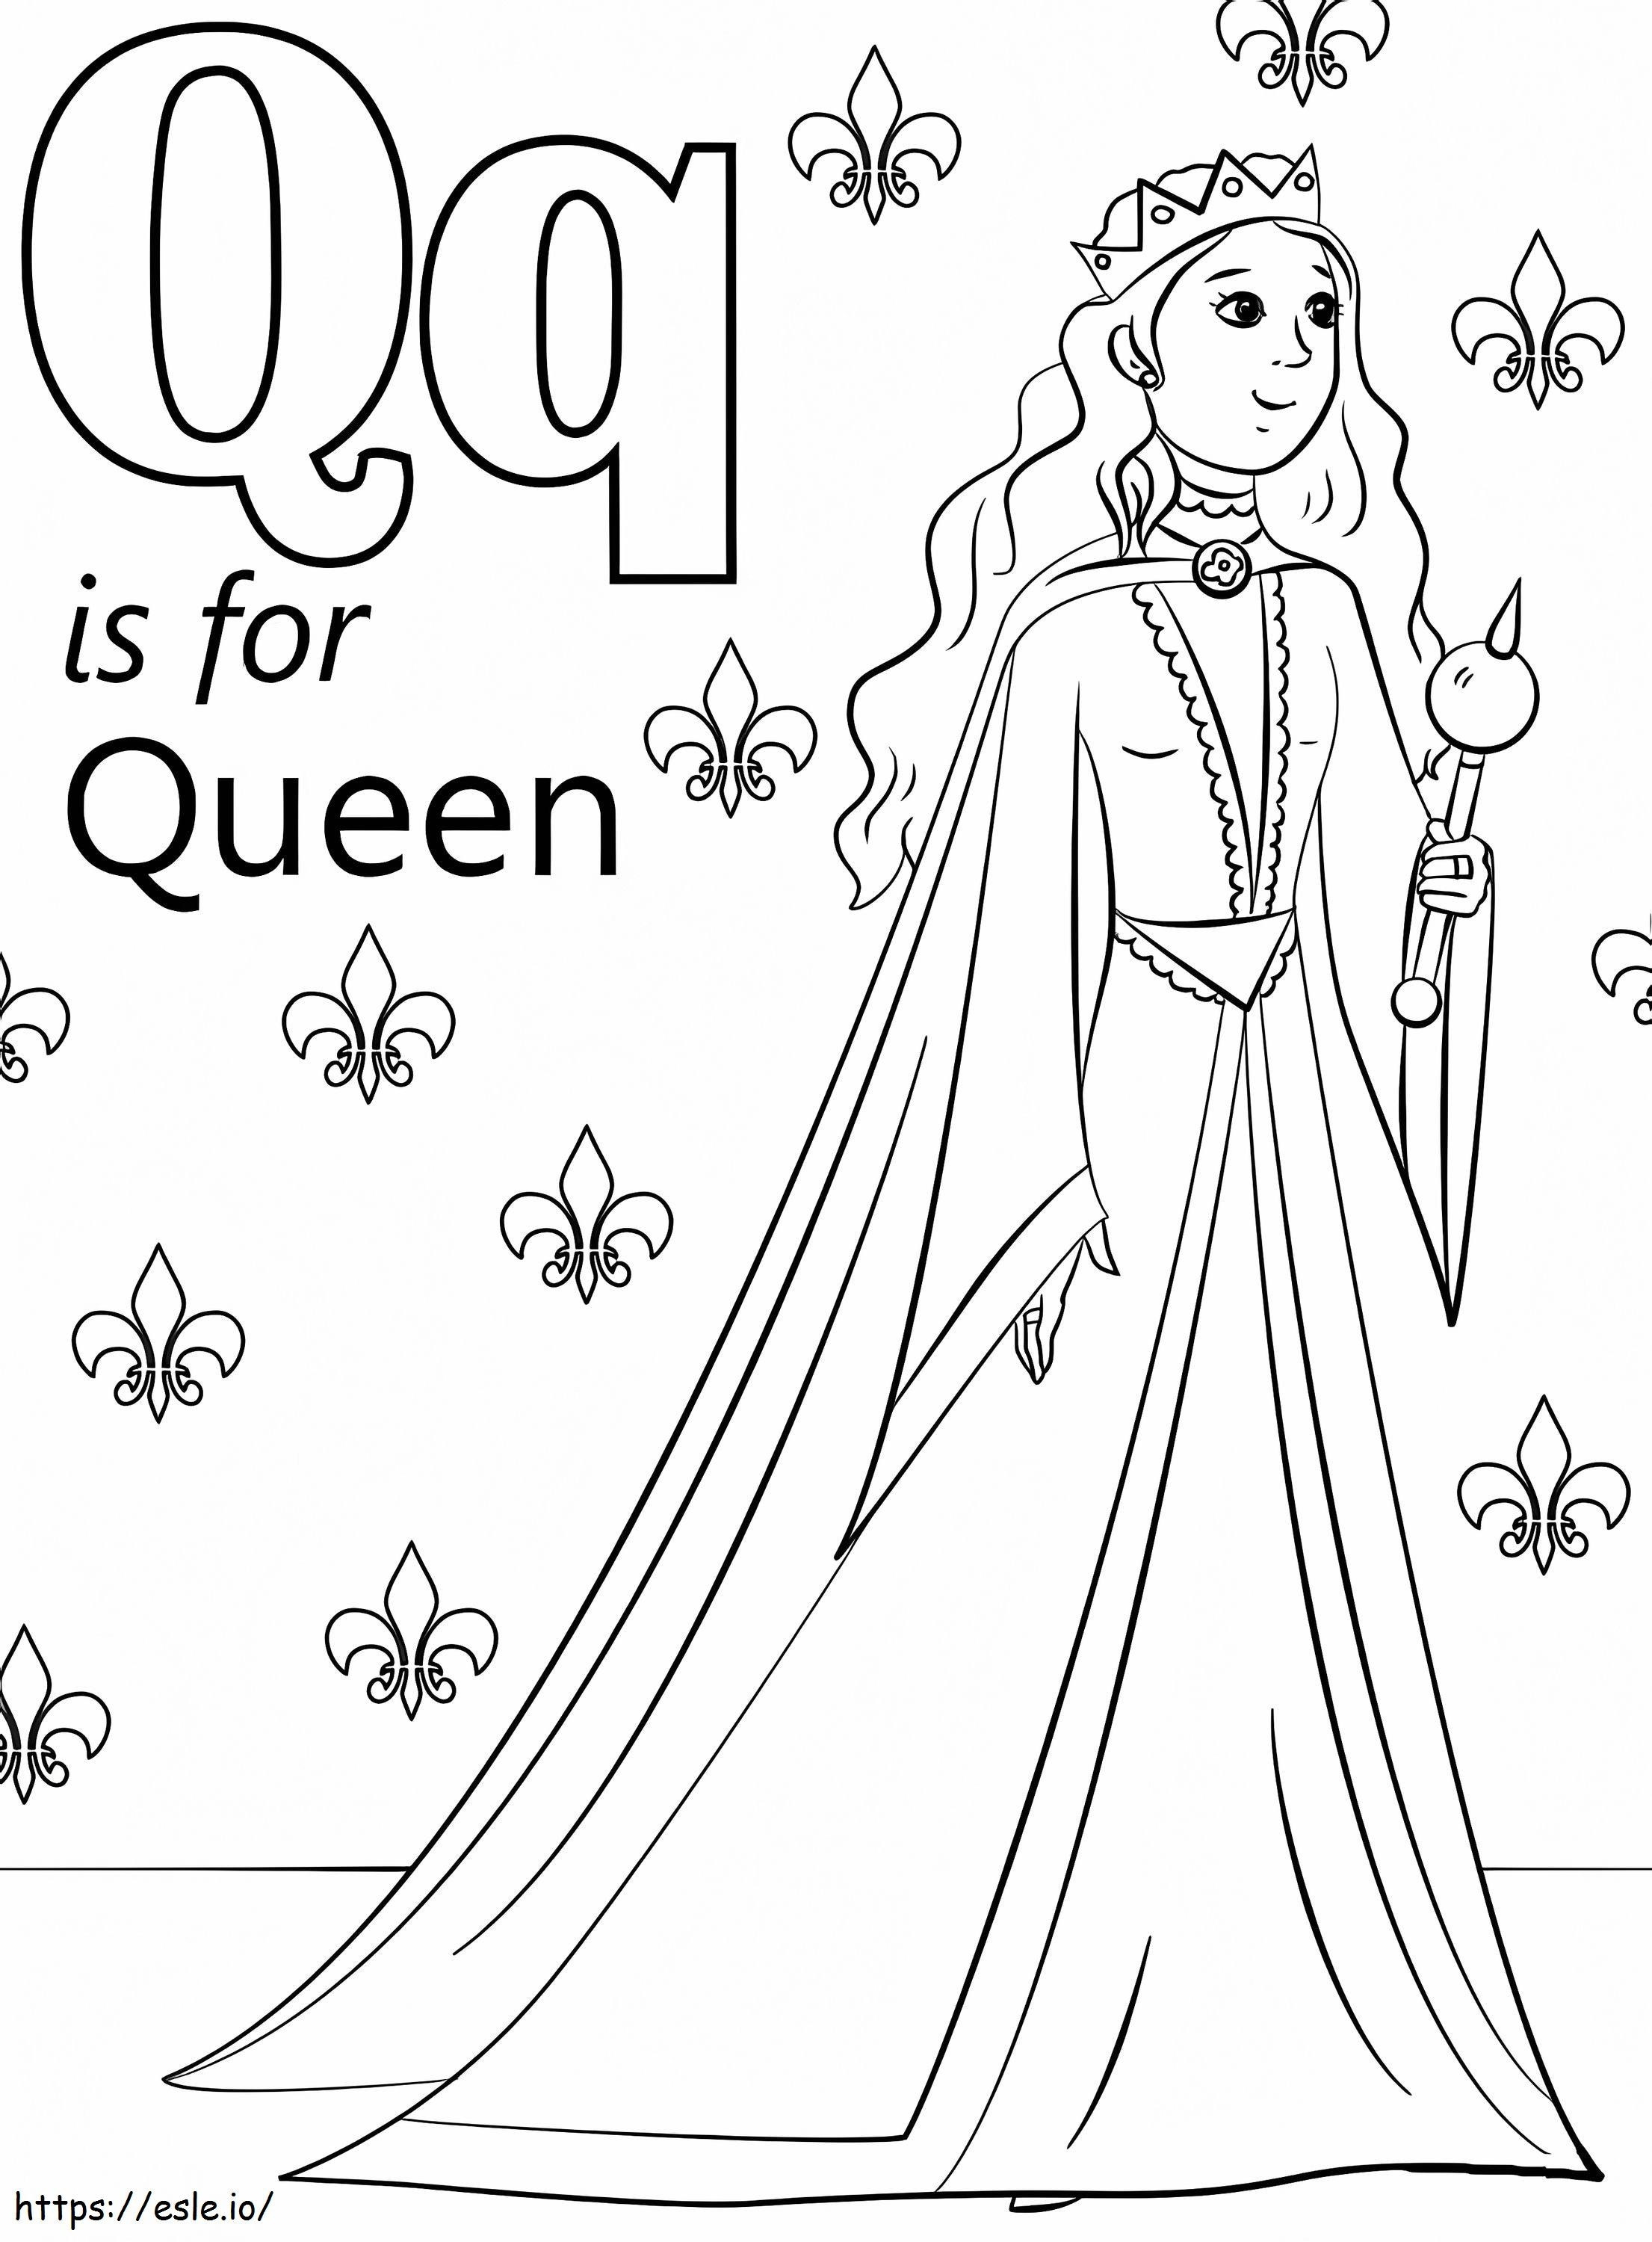 Königin-Buchstabe Q ausmalbilder